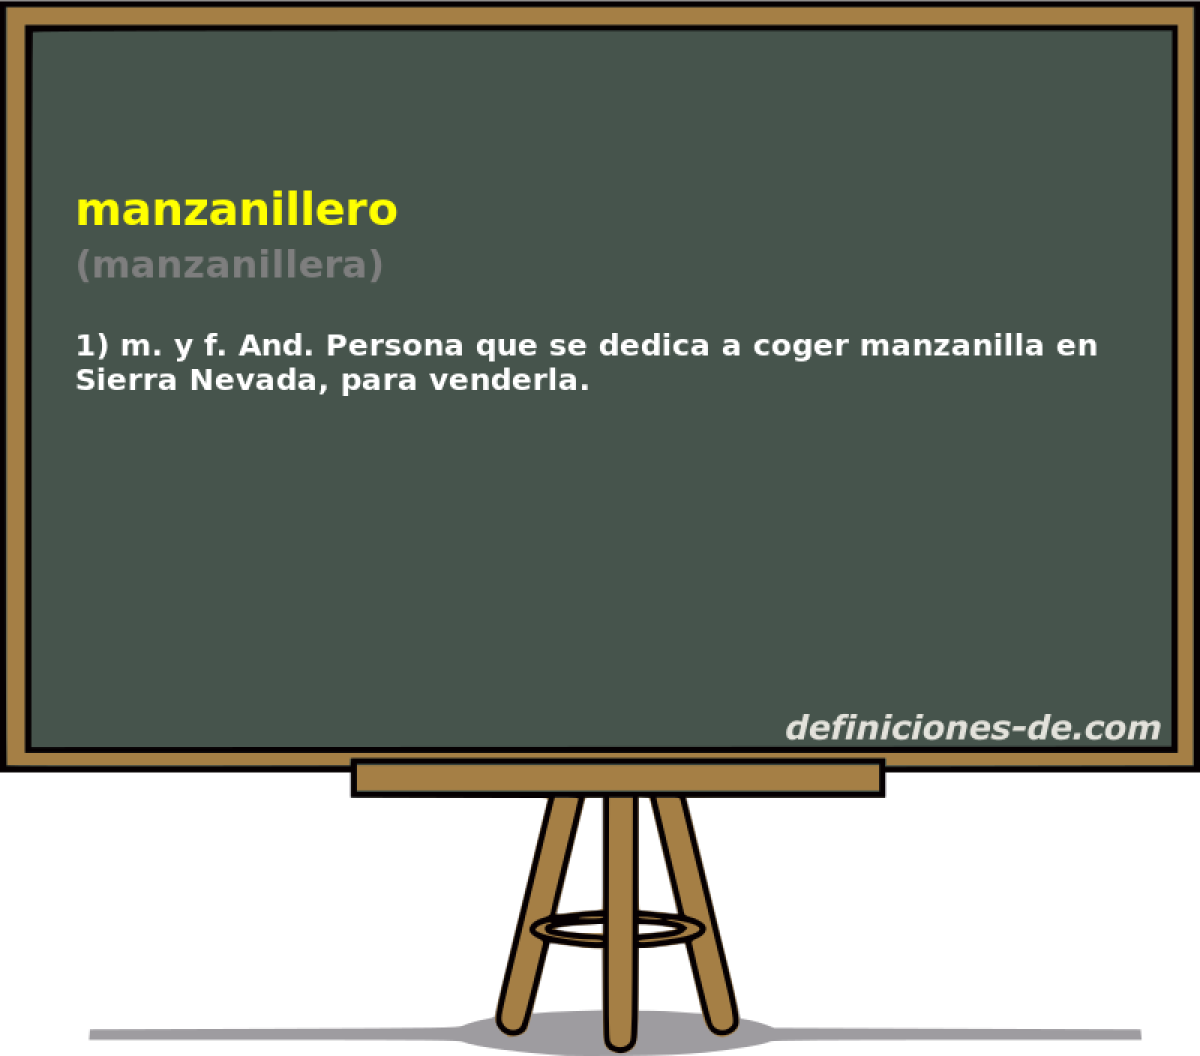 manzanillero (manzanillera)